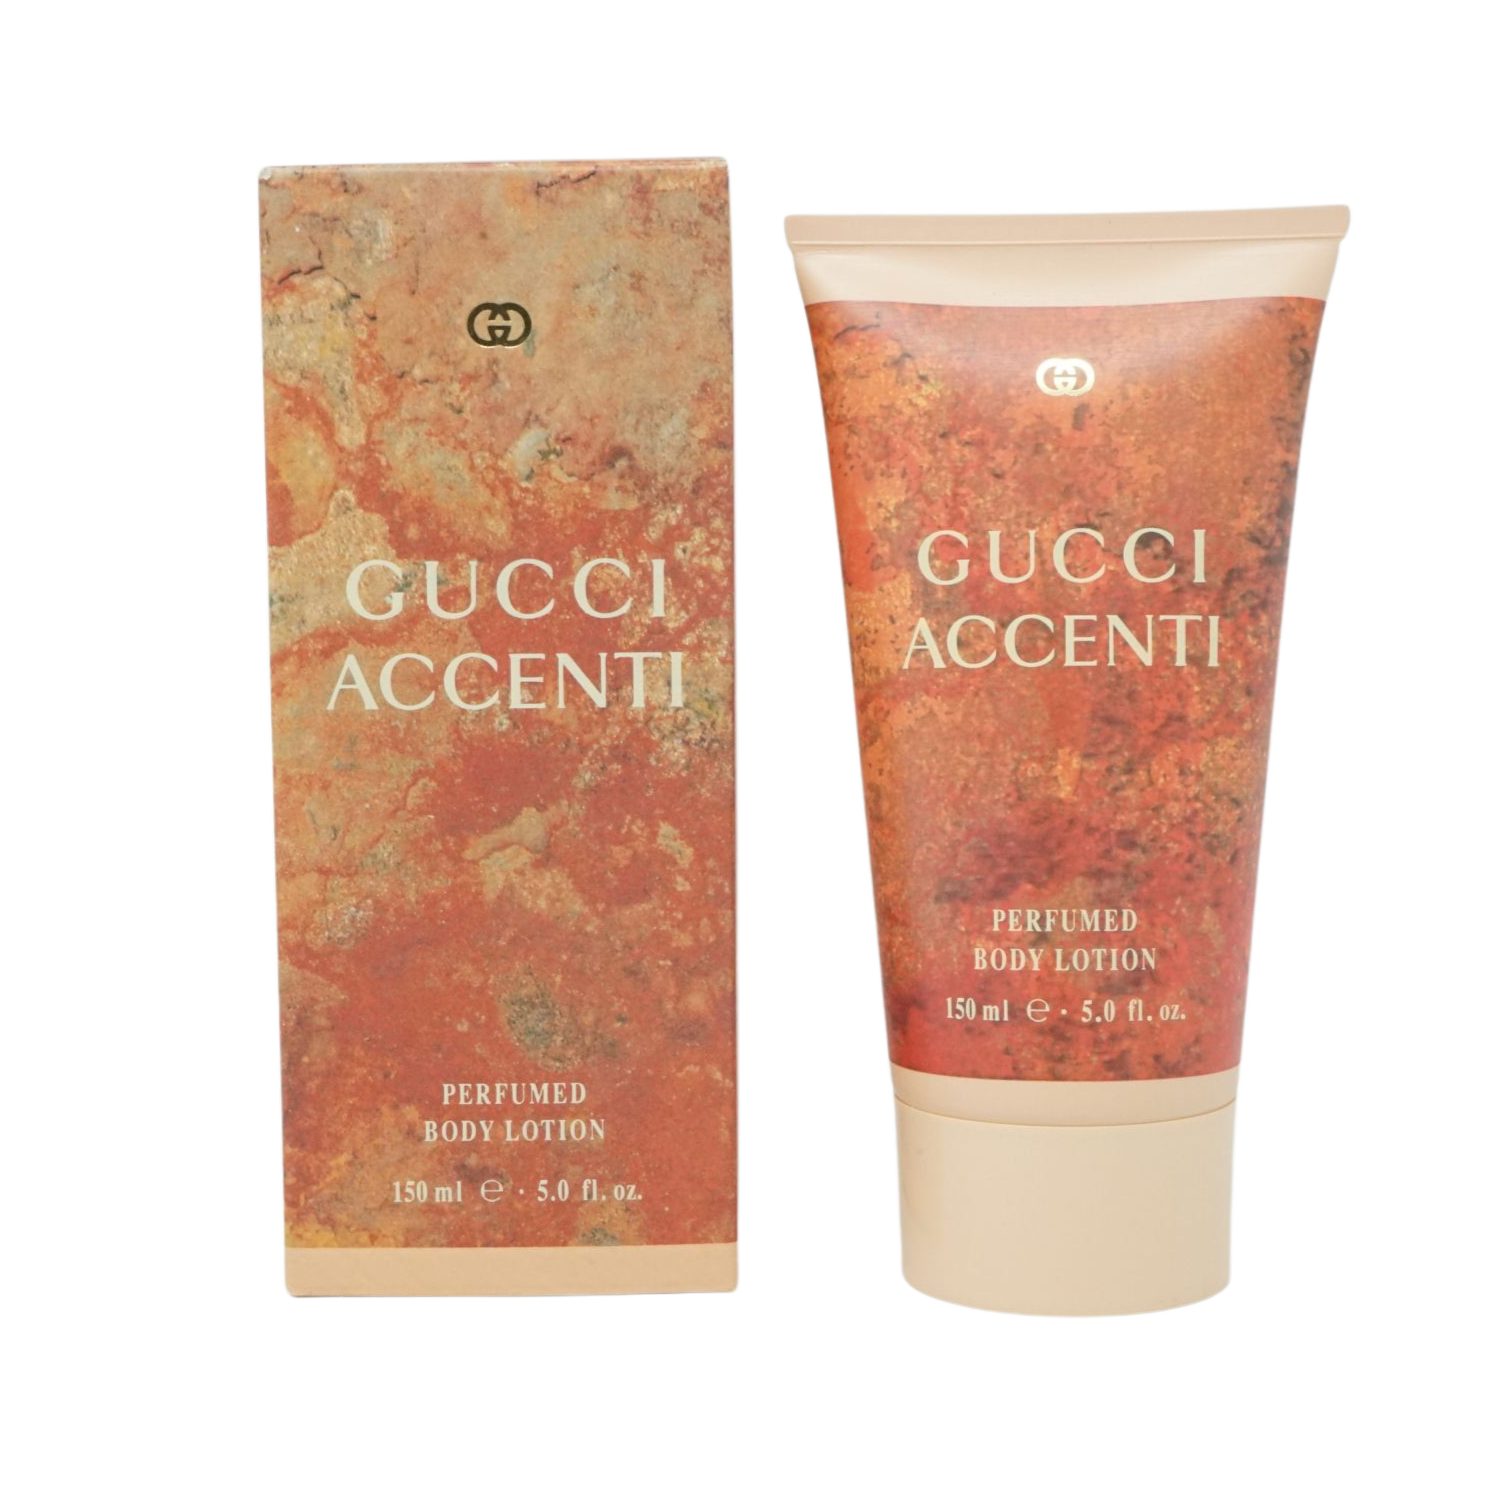 GUCCI Eau de Toilette Gucci Accenti Perfumed Body Lotion 150ml